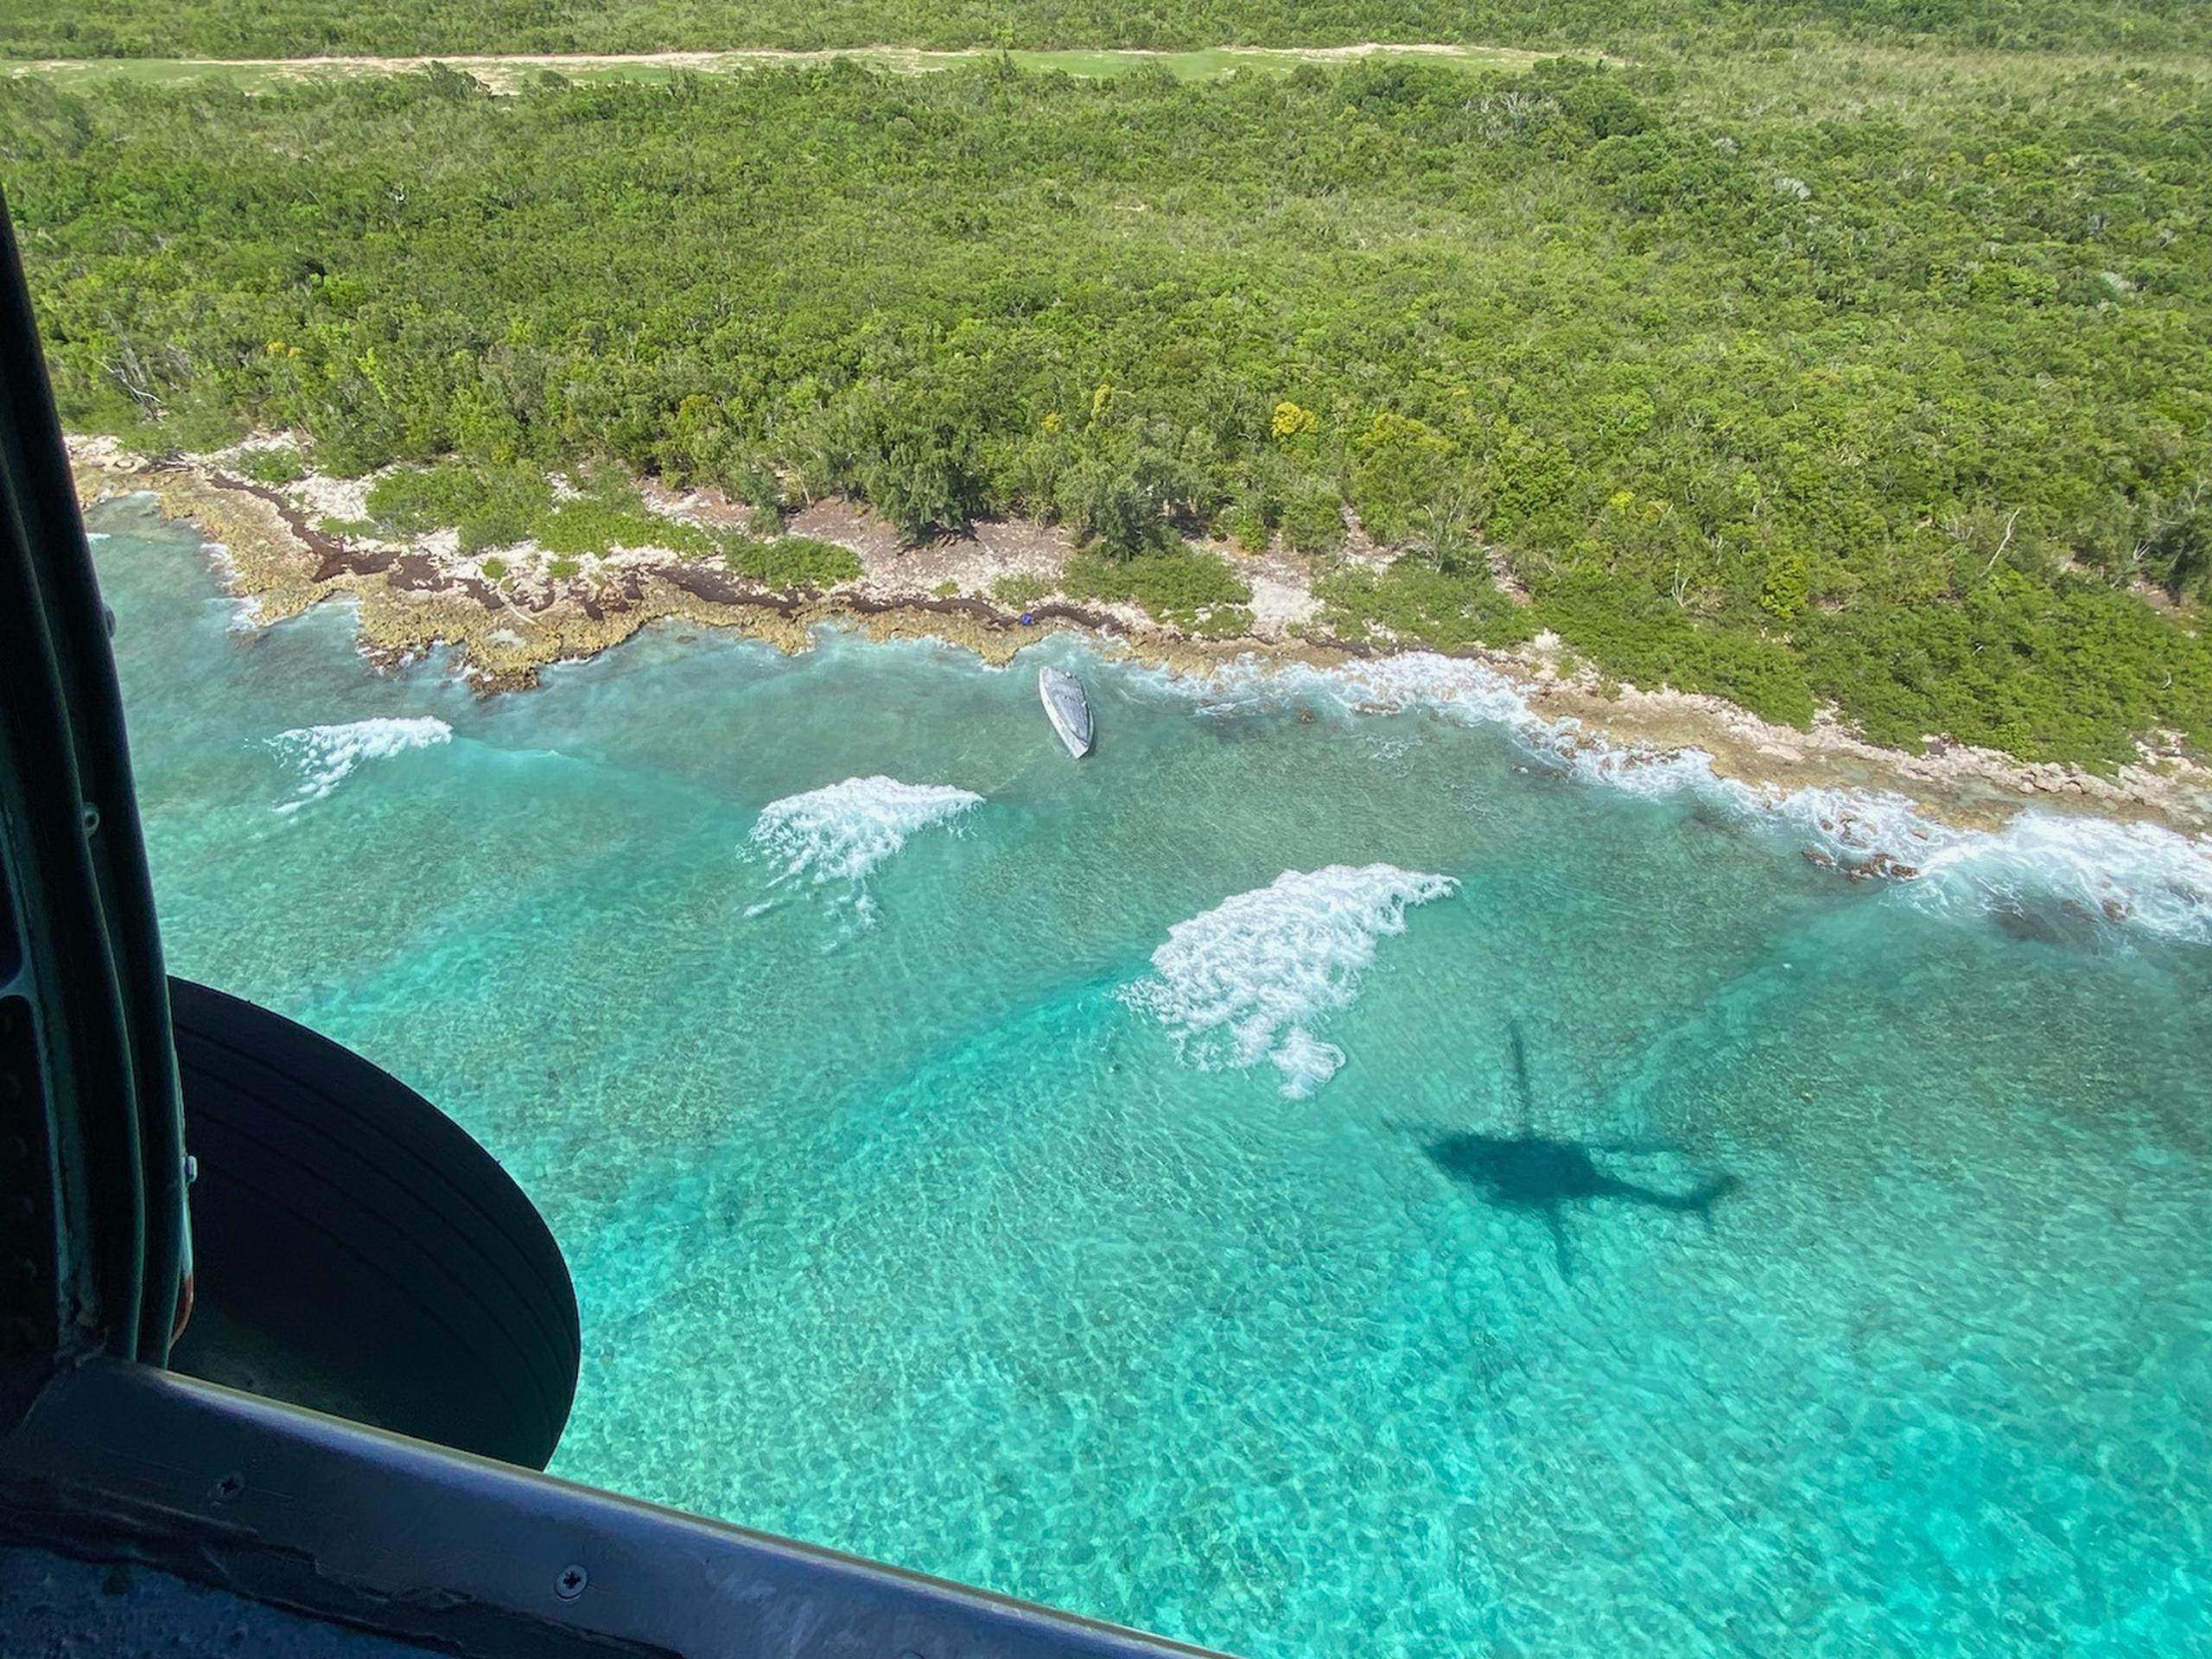 La tripulación de un avión polivalente de Aduanas y Protección de Fronteras Aéreas y Marinas detectó el miércoles una embarcación sospechosa cerca de isla de Mona y Playa Buyé en Cabo Rojo.